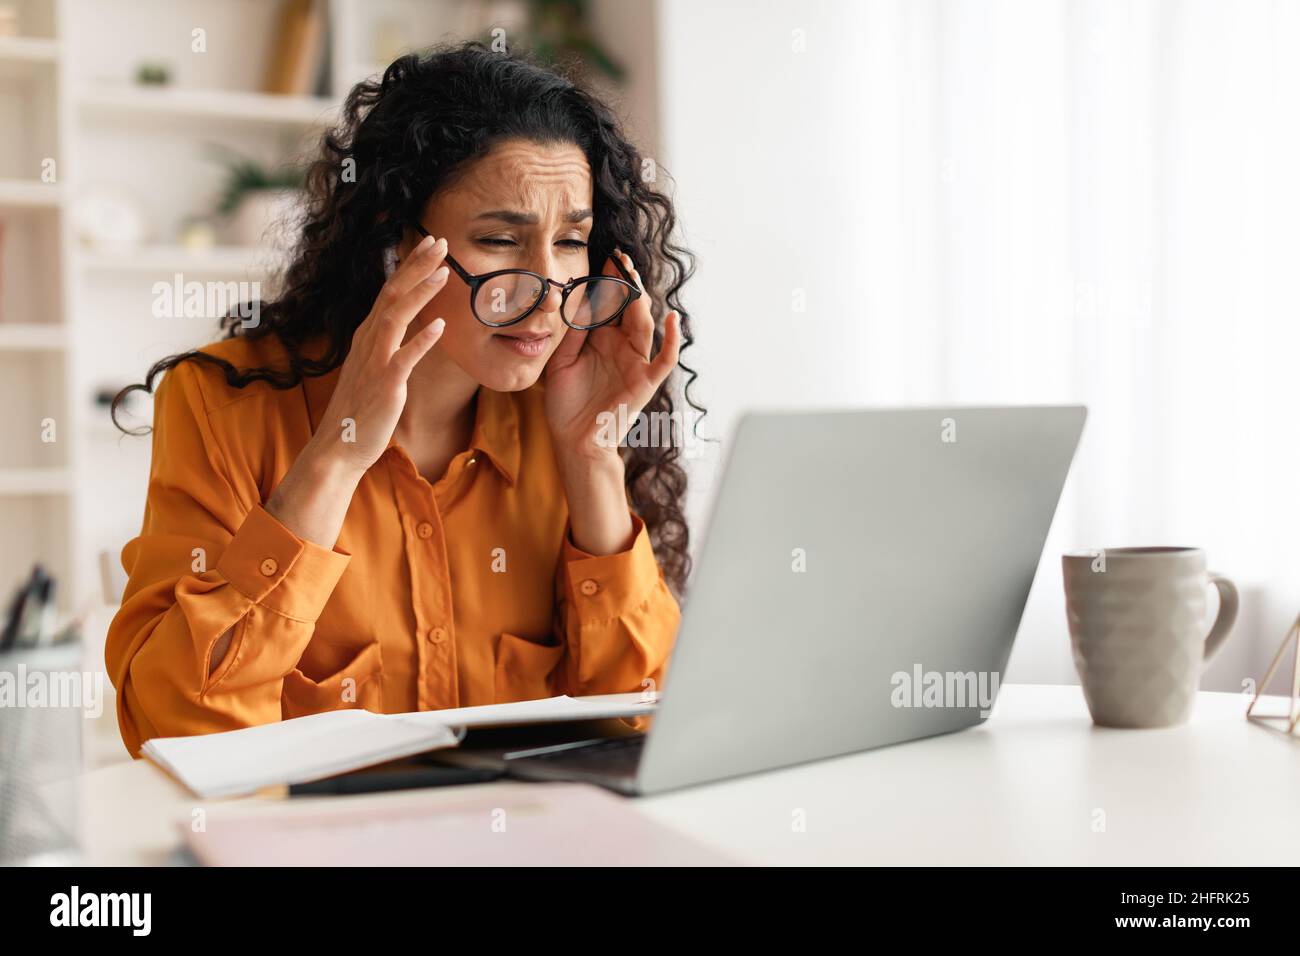 Femme avec une mauvaise vue portant des lunettes regardant un ordinateur portable à l'intérieur Banque D'Images